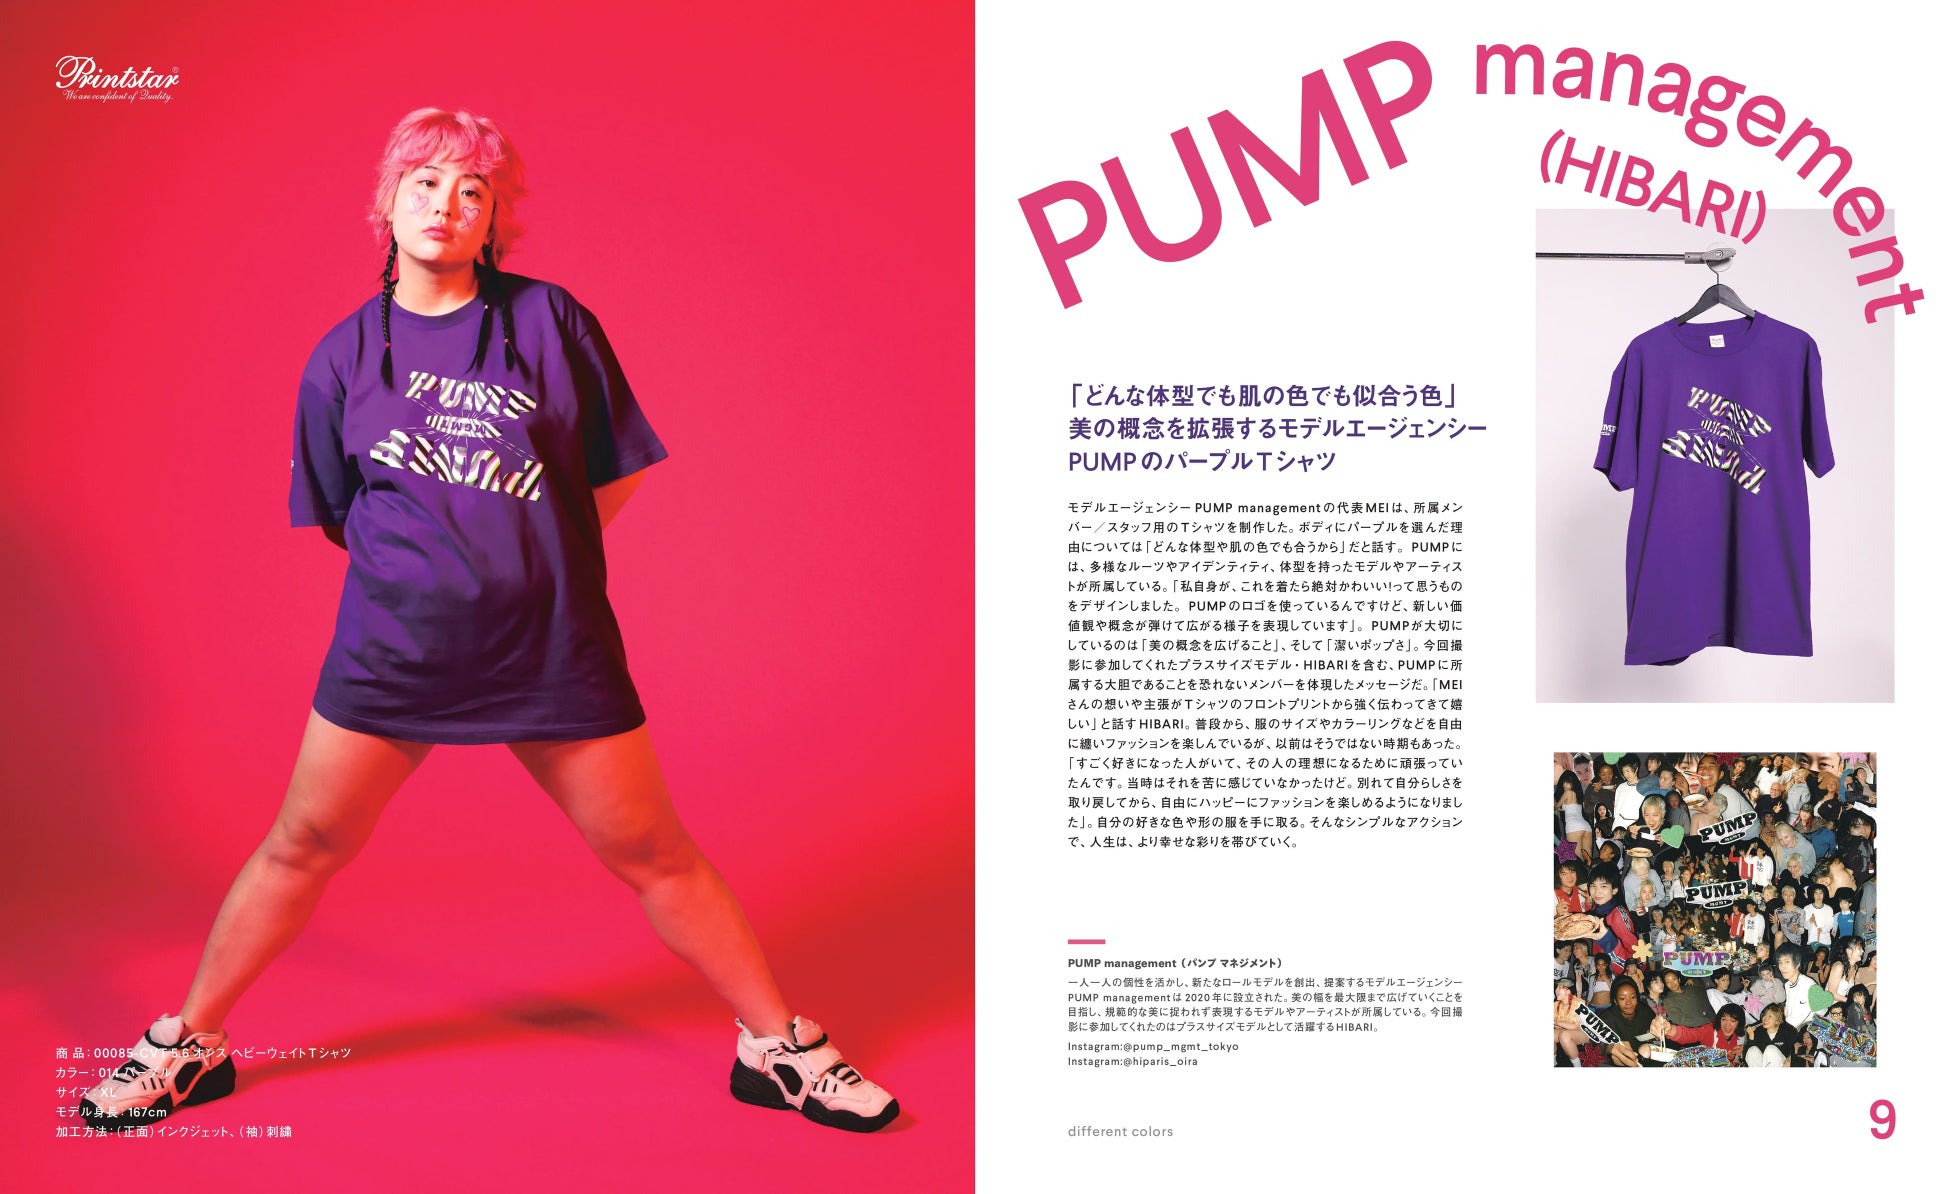 プリンタブルウェア「Printstar」「glimmer」と人気メディア『NEUT Magazine』がコラボで最新カタログを発刊。俳優松㟢翔平ら7組が自作Tシャツを披露。プレゼントキャンペーンも実施のサブ画像7